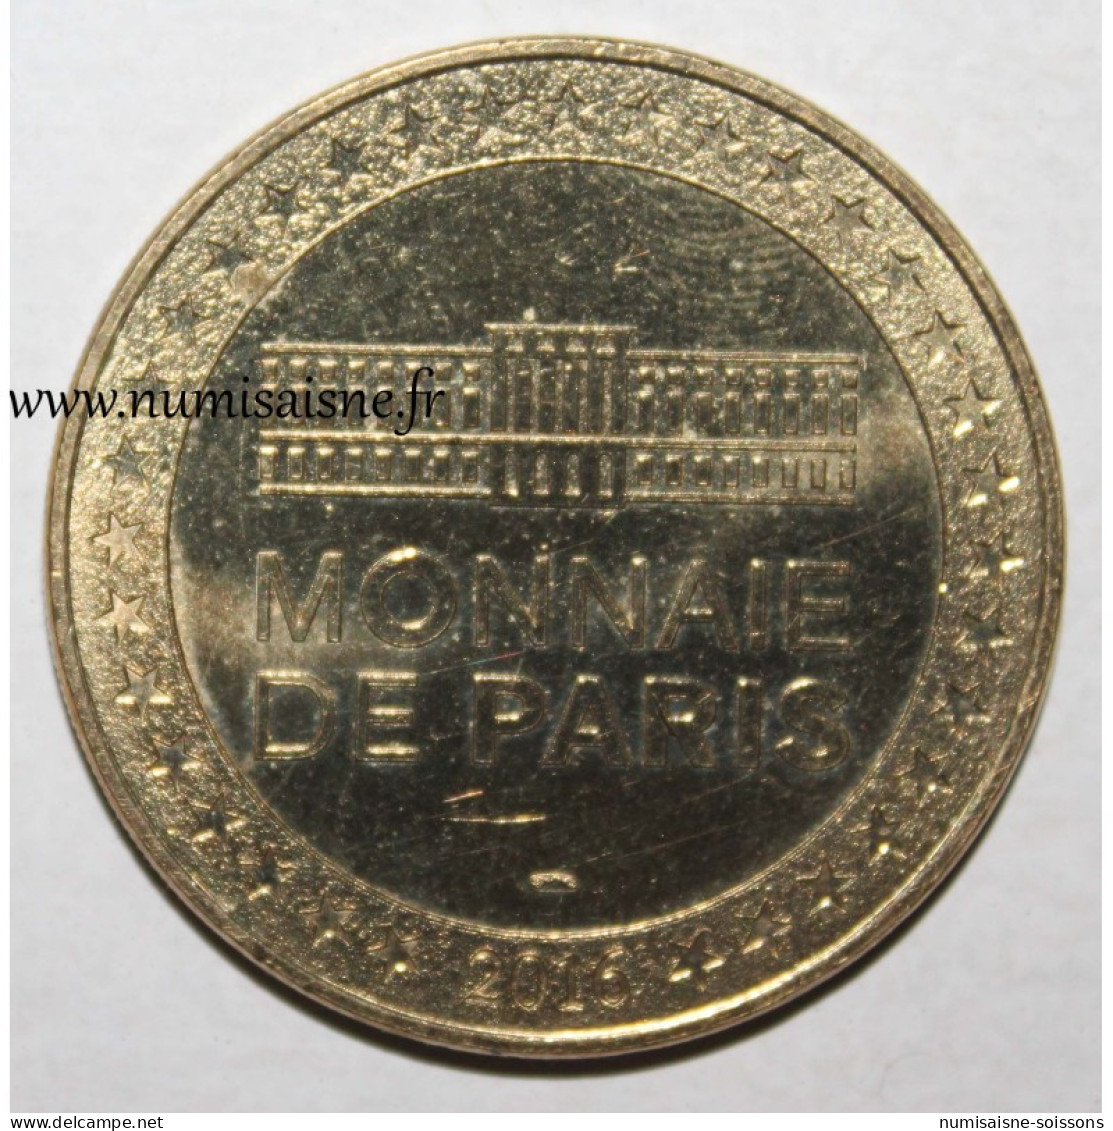 75 - PARIS - Exposition Bertrand Lavier - Monnaie De Paris - 2016 - 2016